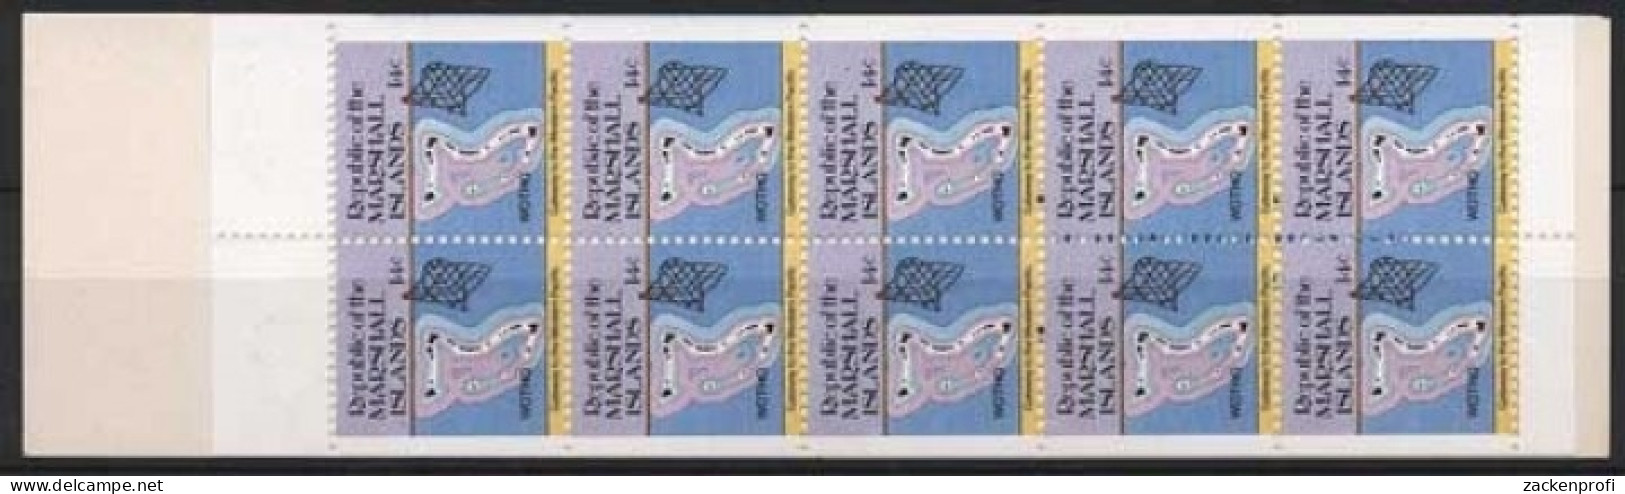 Marshall-Inseln 1985 Freimarken: Inselkarten 40 MH Postfrisch (C21495) - Marshall Islands